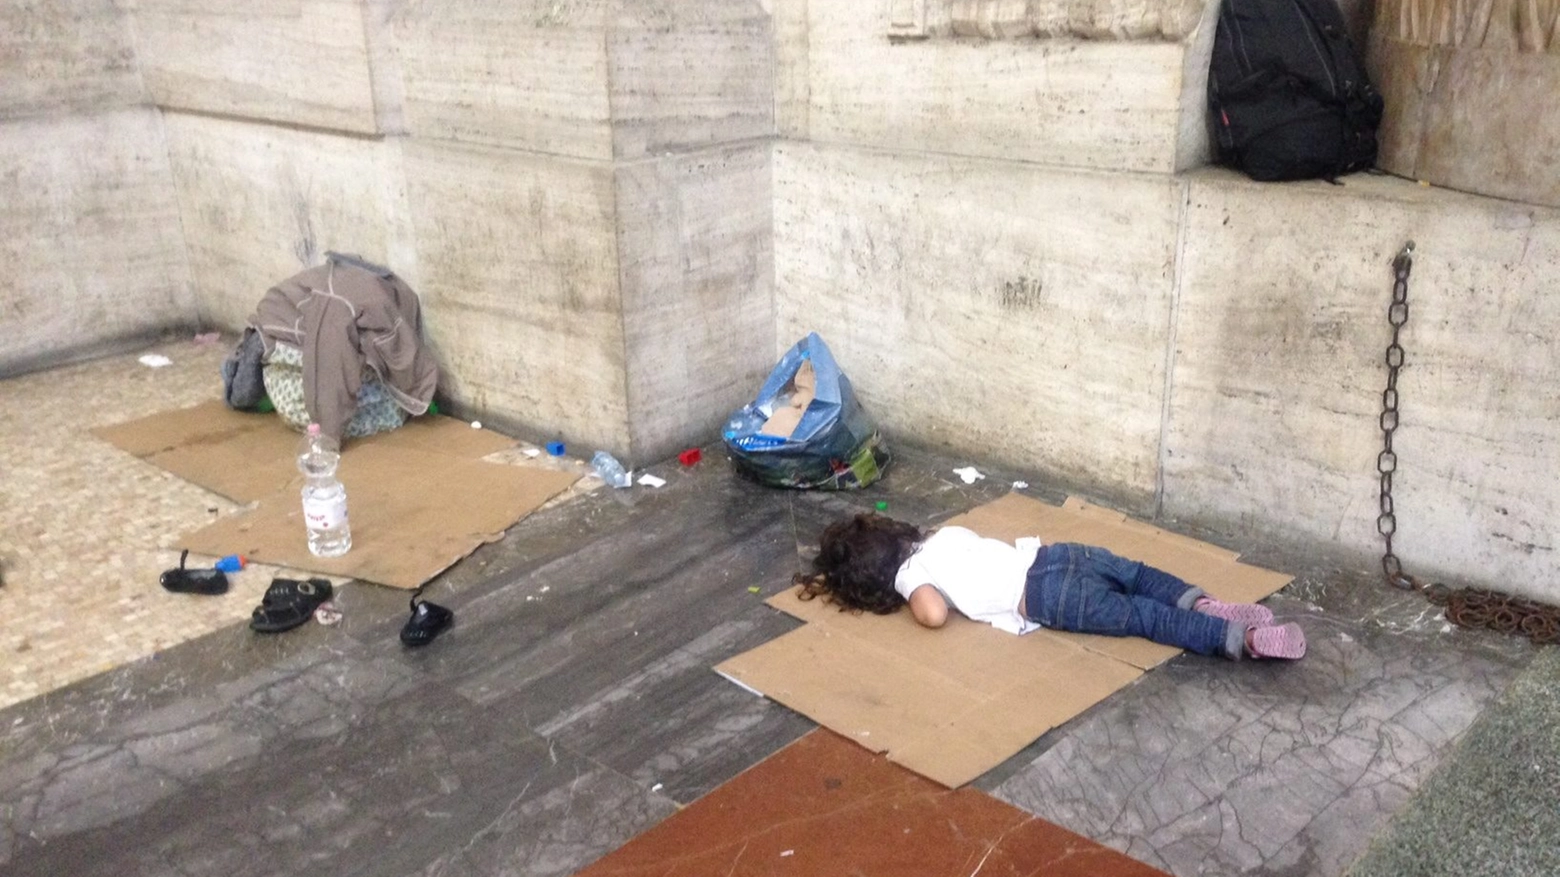 Bambini siriani dormono su cartoni in Stazione Centrale a Milano (foto Silvia Sardone Facebook)